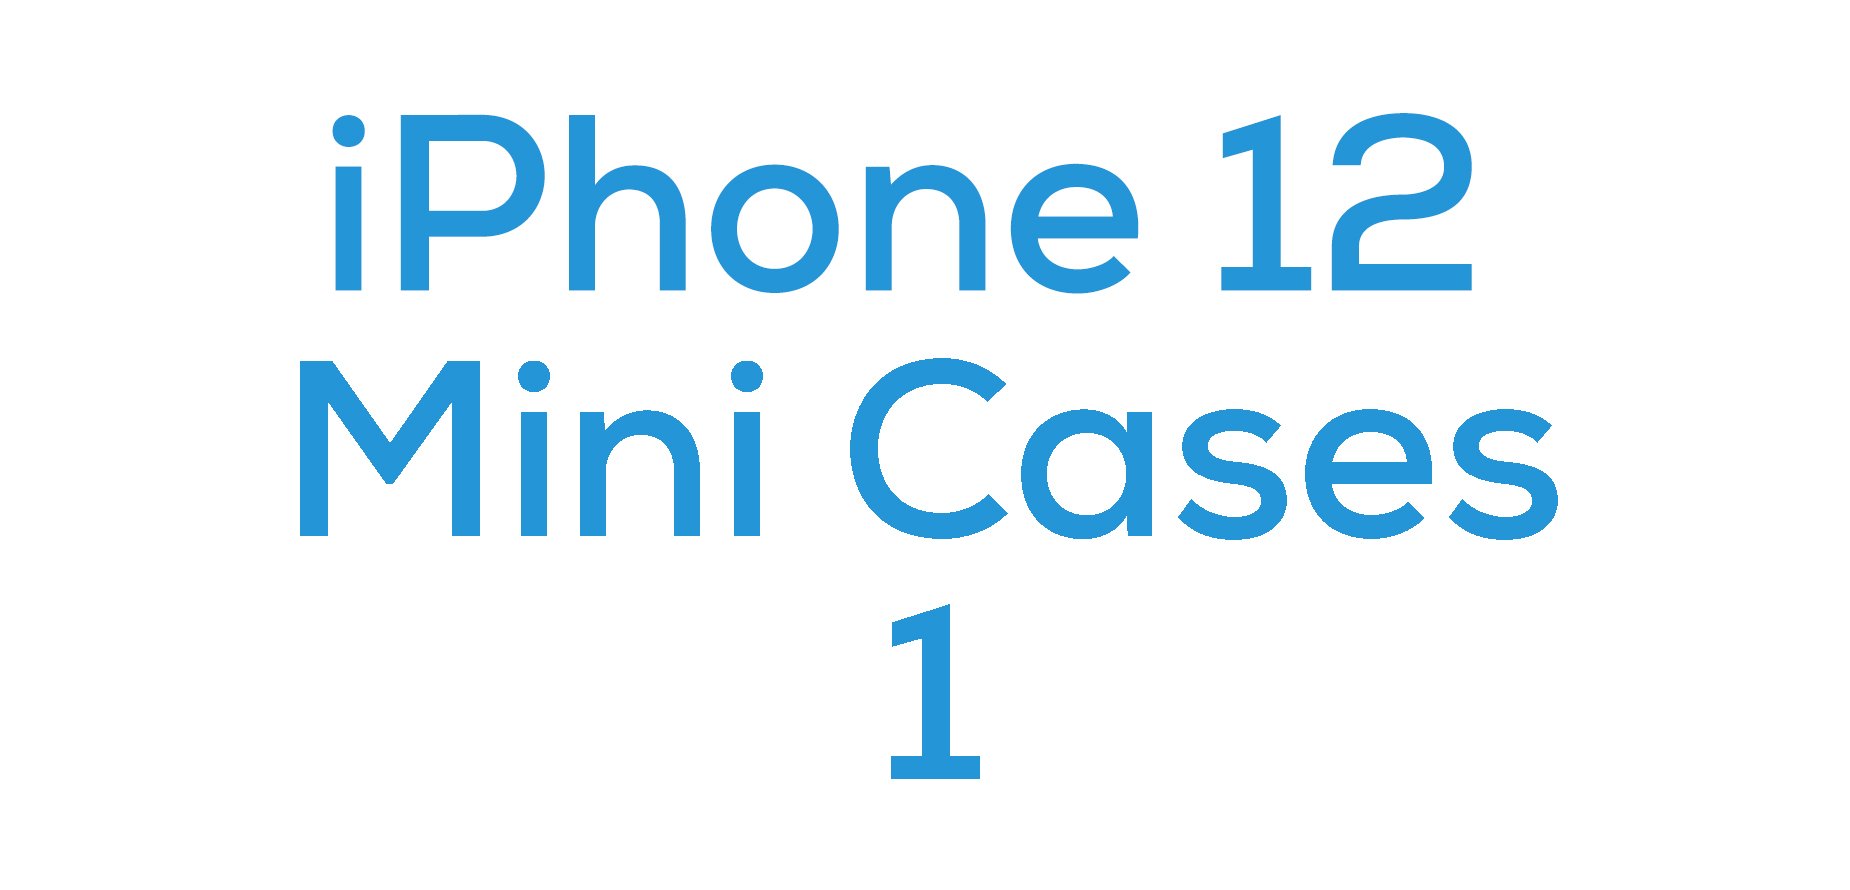 iPhone 12 Mini Cases 1